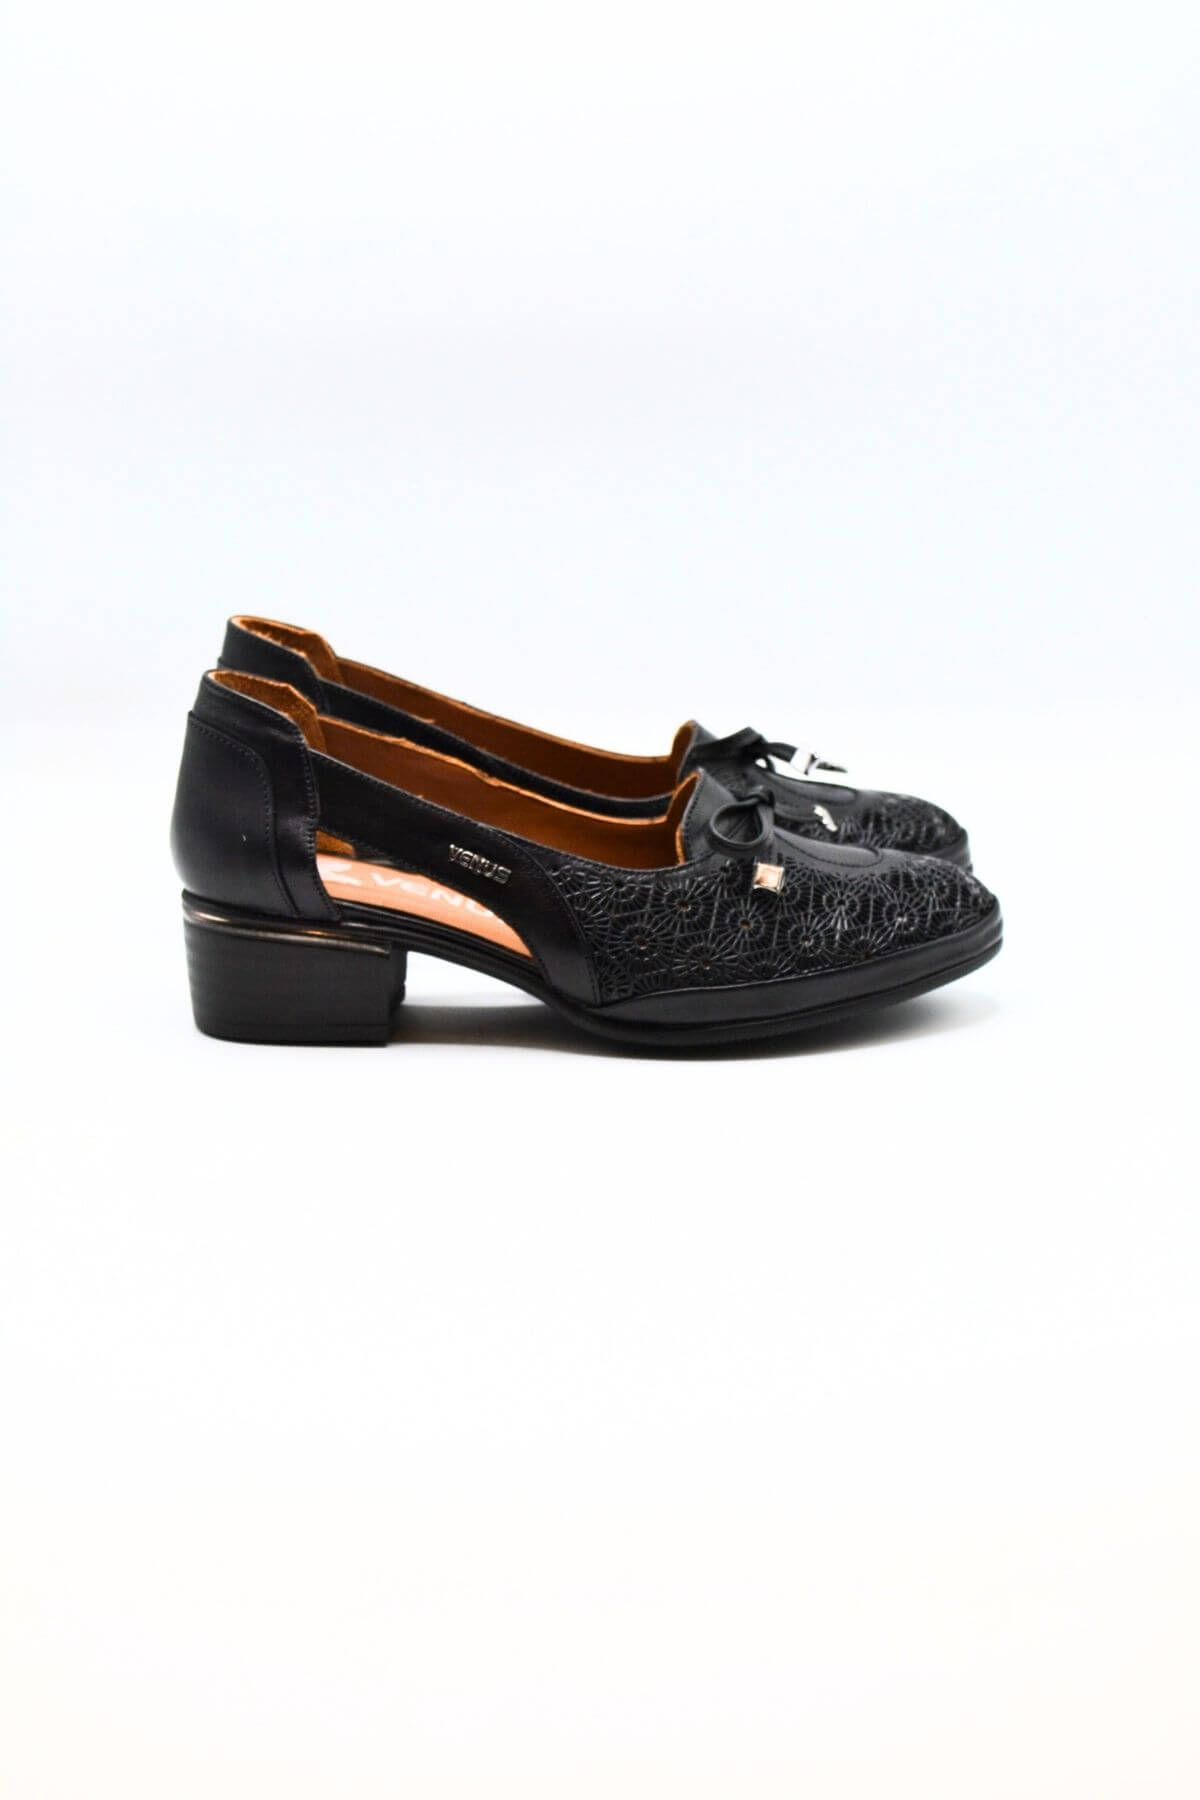 Kadın Topuklu Deri Ayakkabı Siyah 2312522Y - Thumbnail